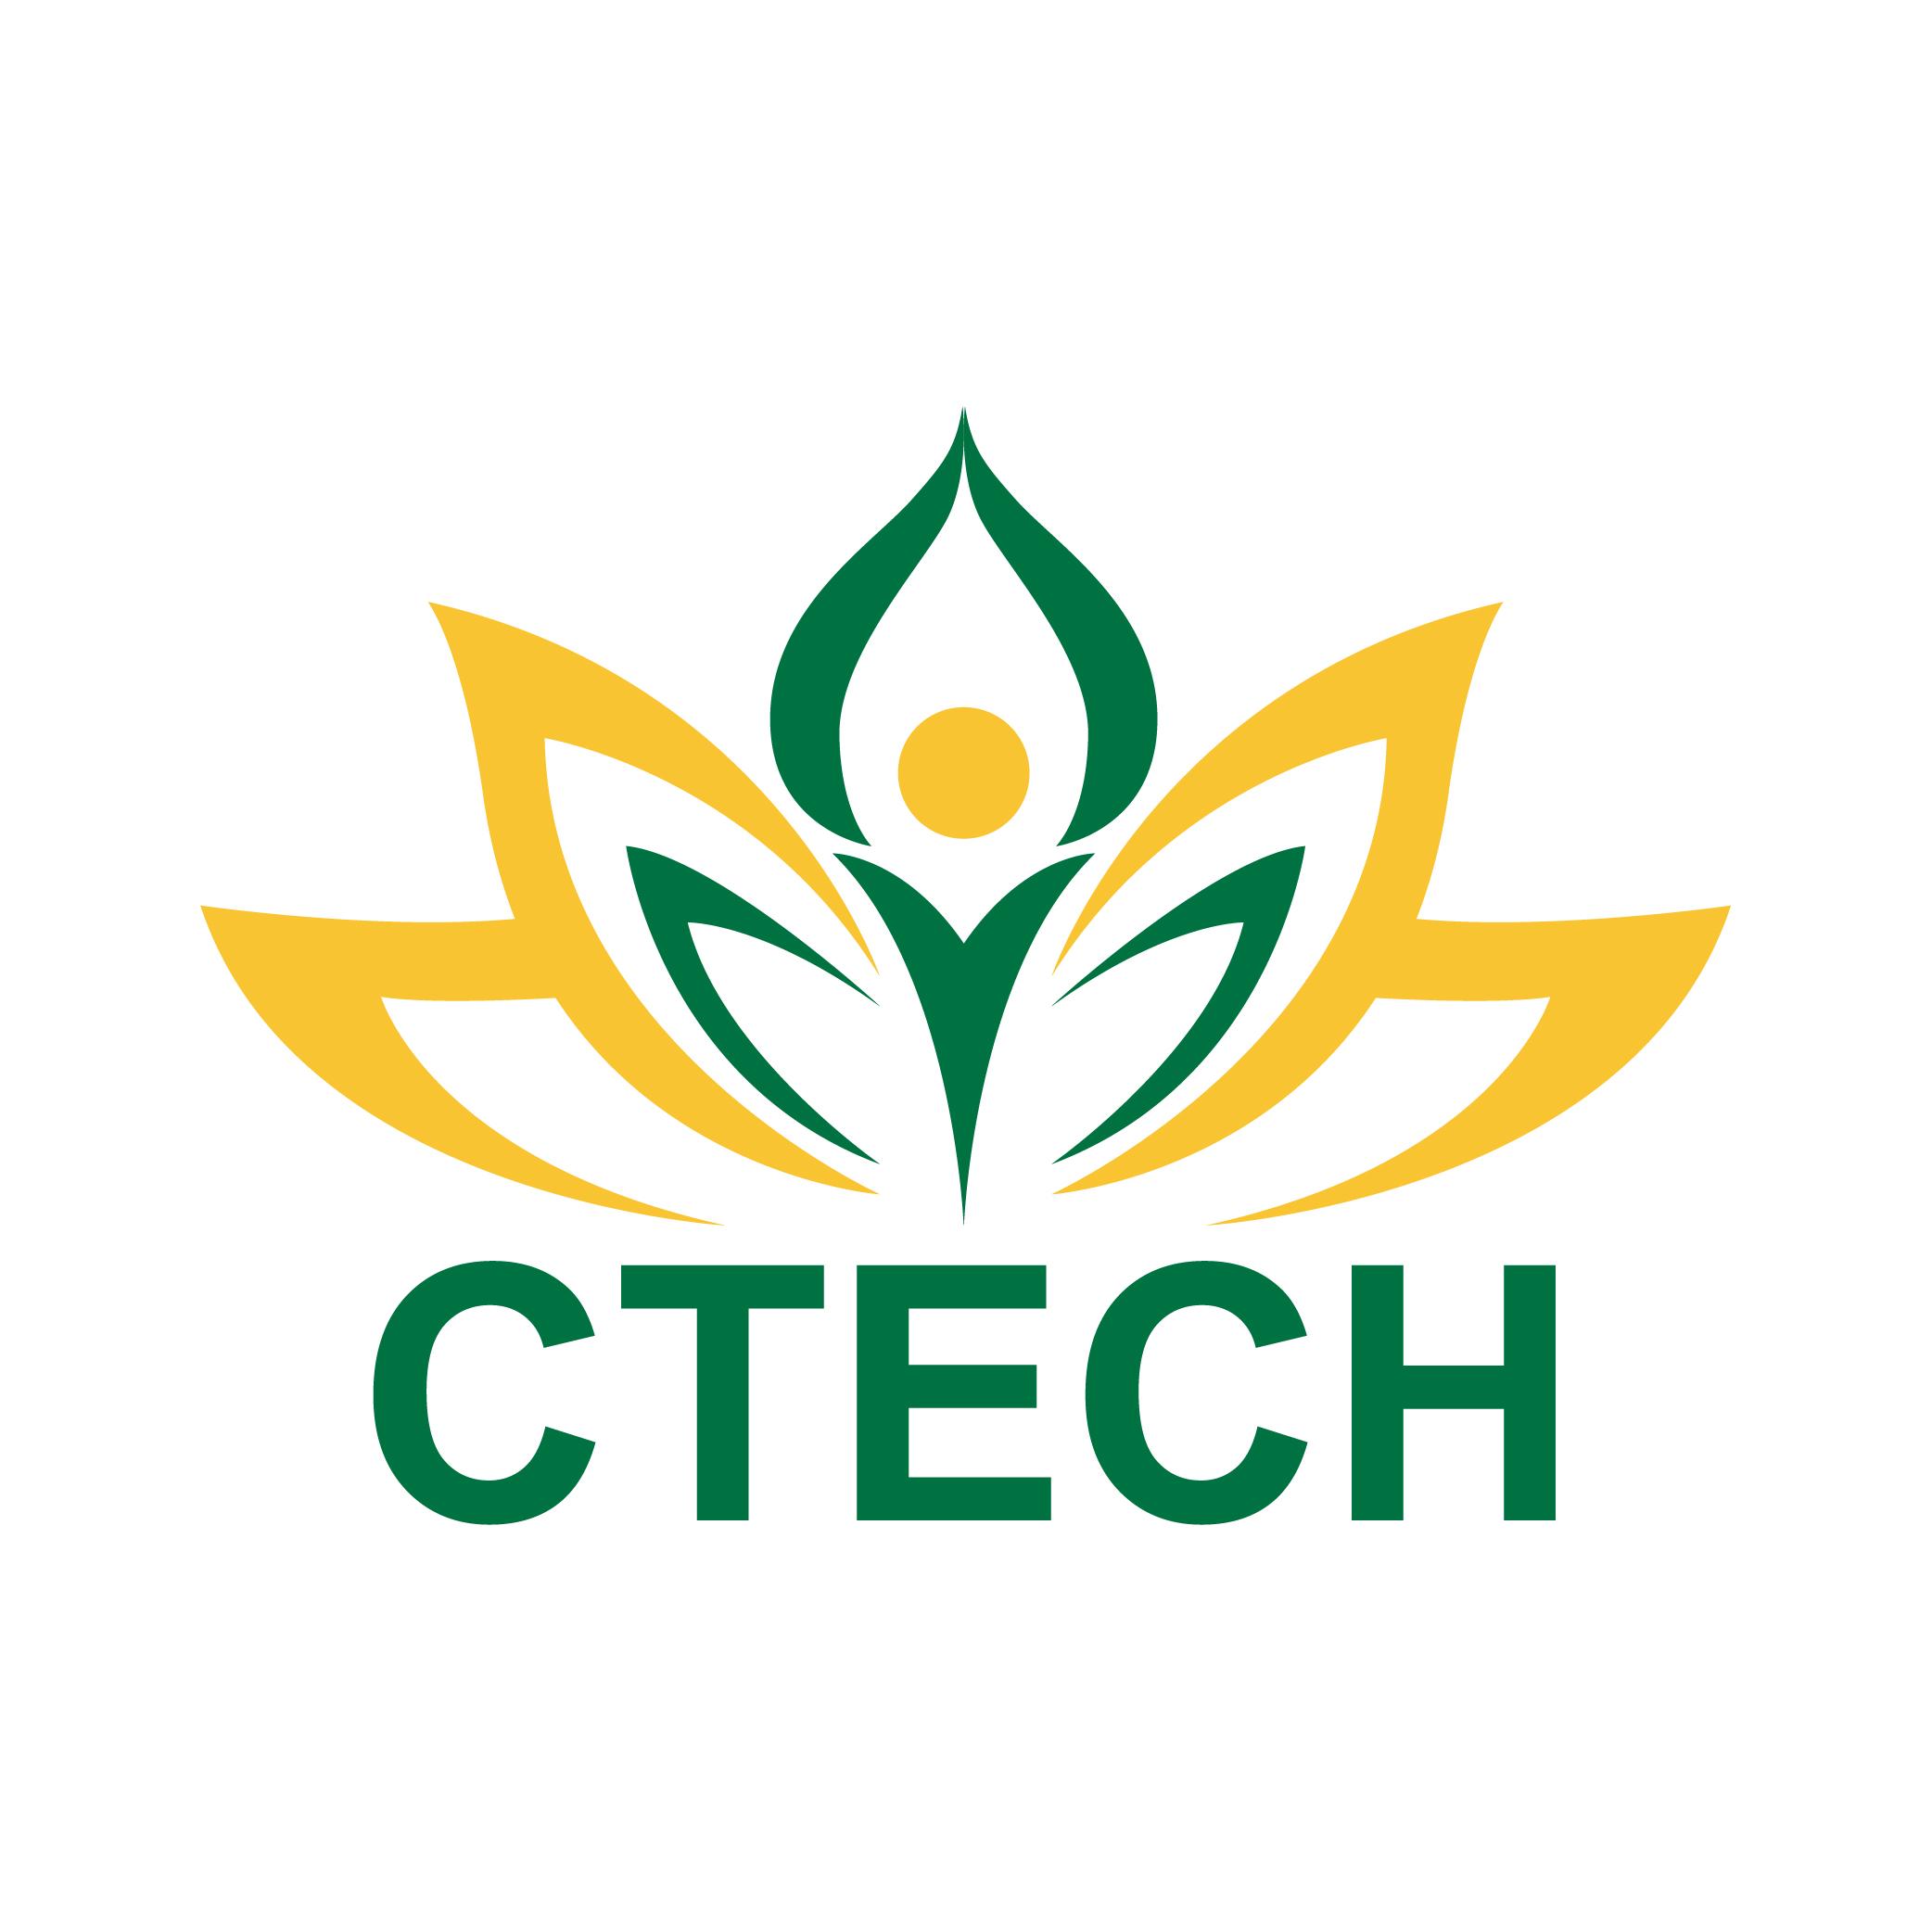 Cao đẳng Kỹ thuật - Công nghệ Bách khoa (CTECH) Tuyển sinh sơ cấp nghề năm 2020 - 2021